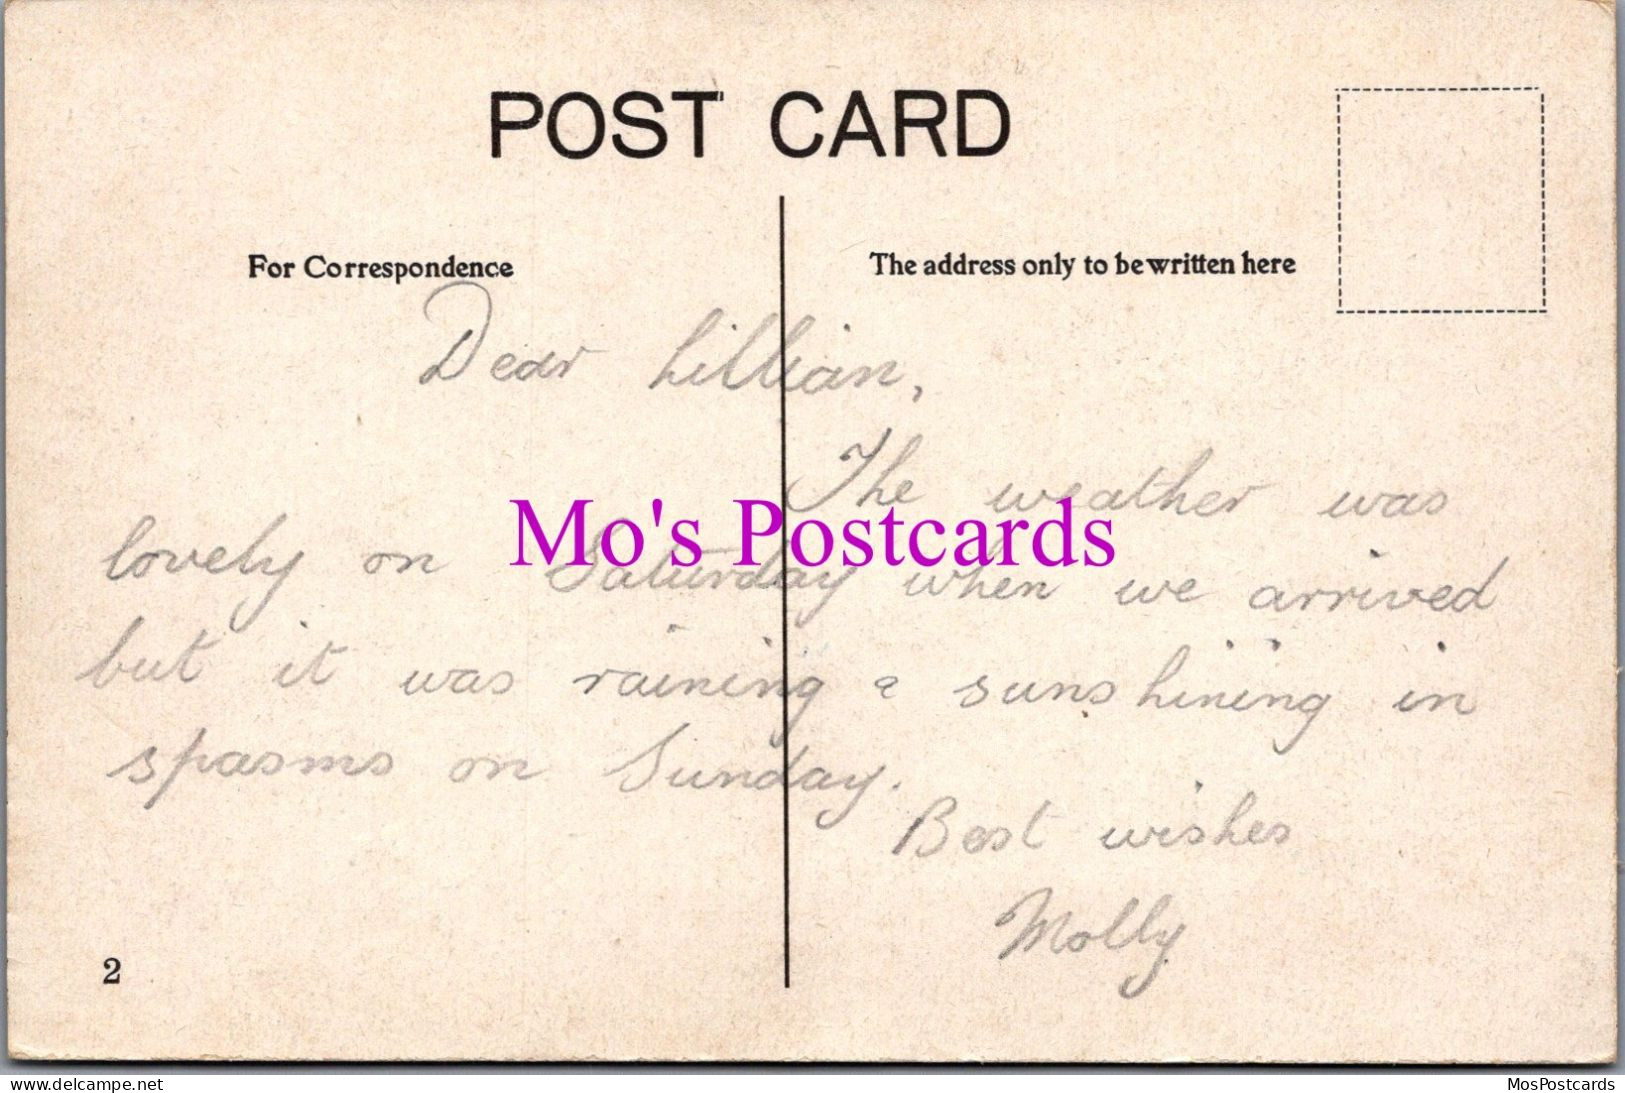 Wales Postcard - Promenade East, Colwyn Bay  DZ284 - Denbighshire